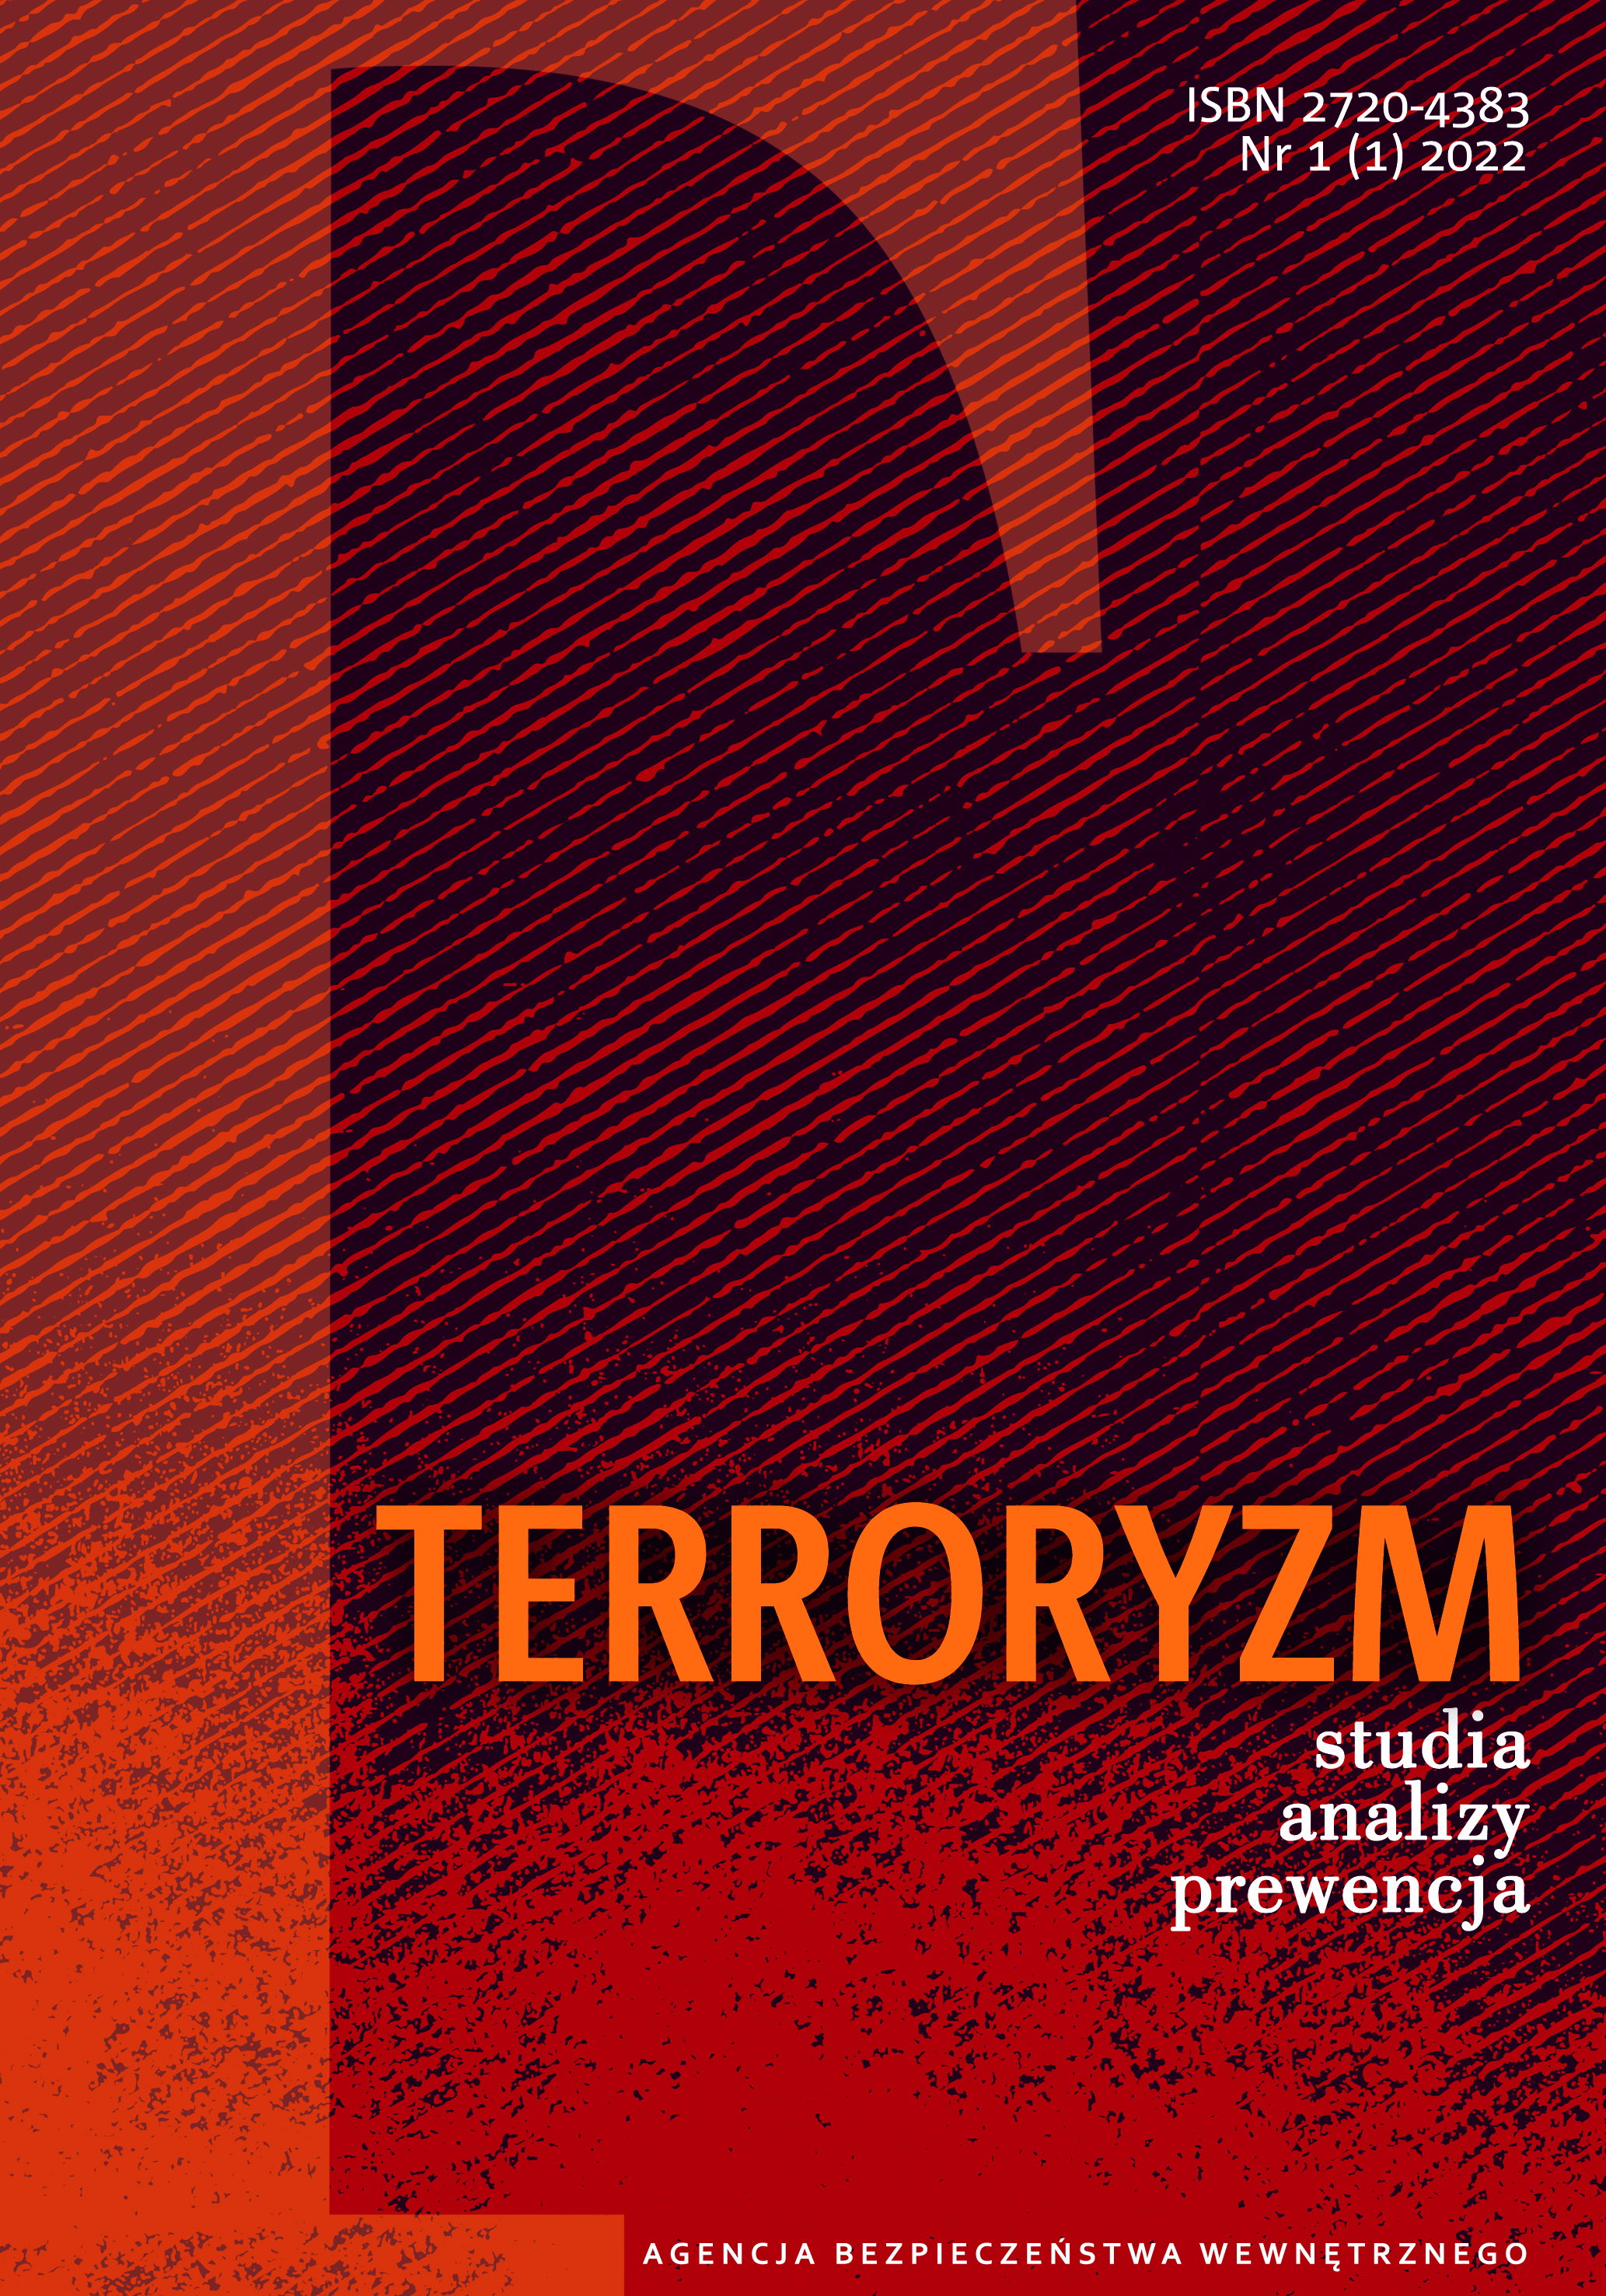 Zadania i uprawnienia organów ścigania karnego w zakresie zwalczania terroryzmu w Polsce – perspektywa prawna